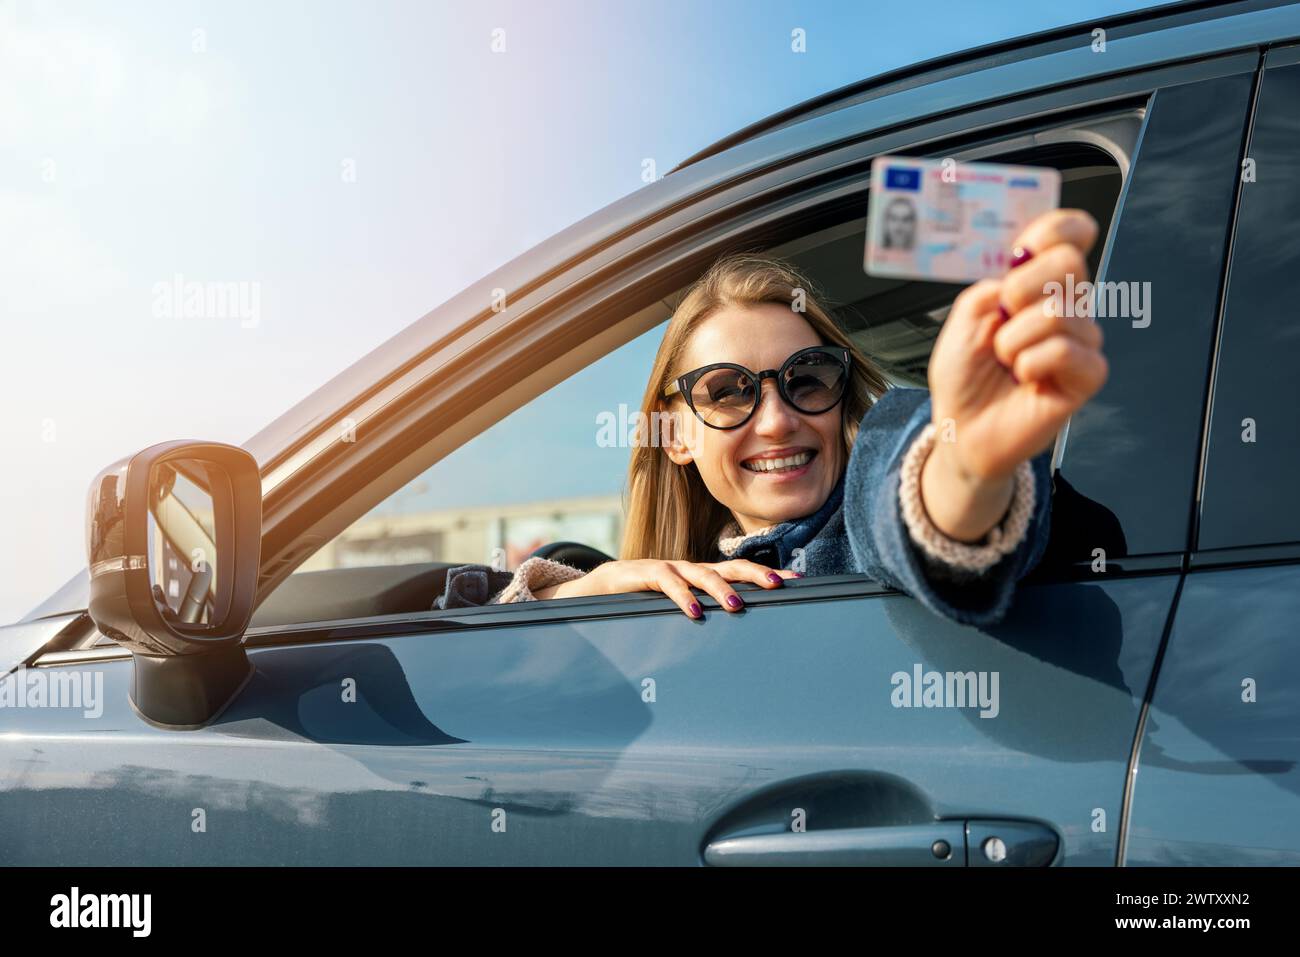 donna felice che mostra la sua nuova patente fuori dal finestrino dell'auto nella giornata di sole Foto Stock